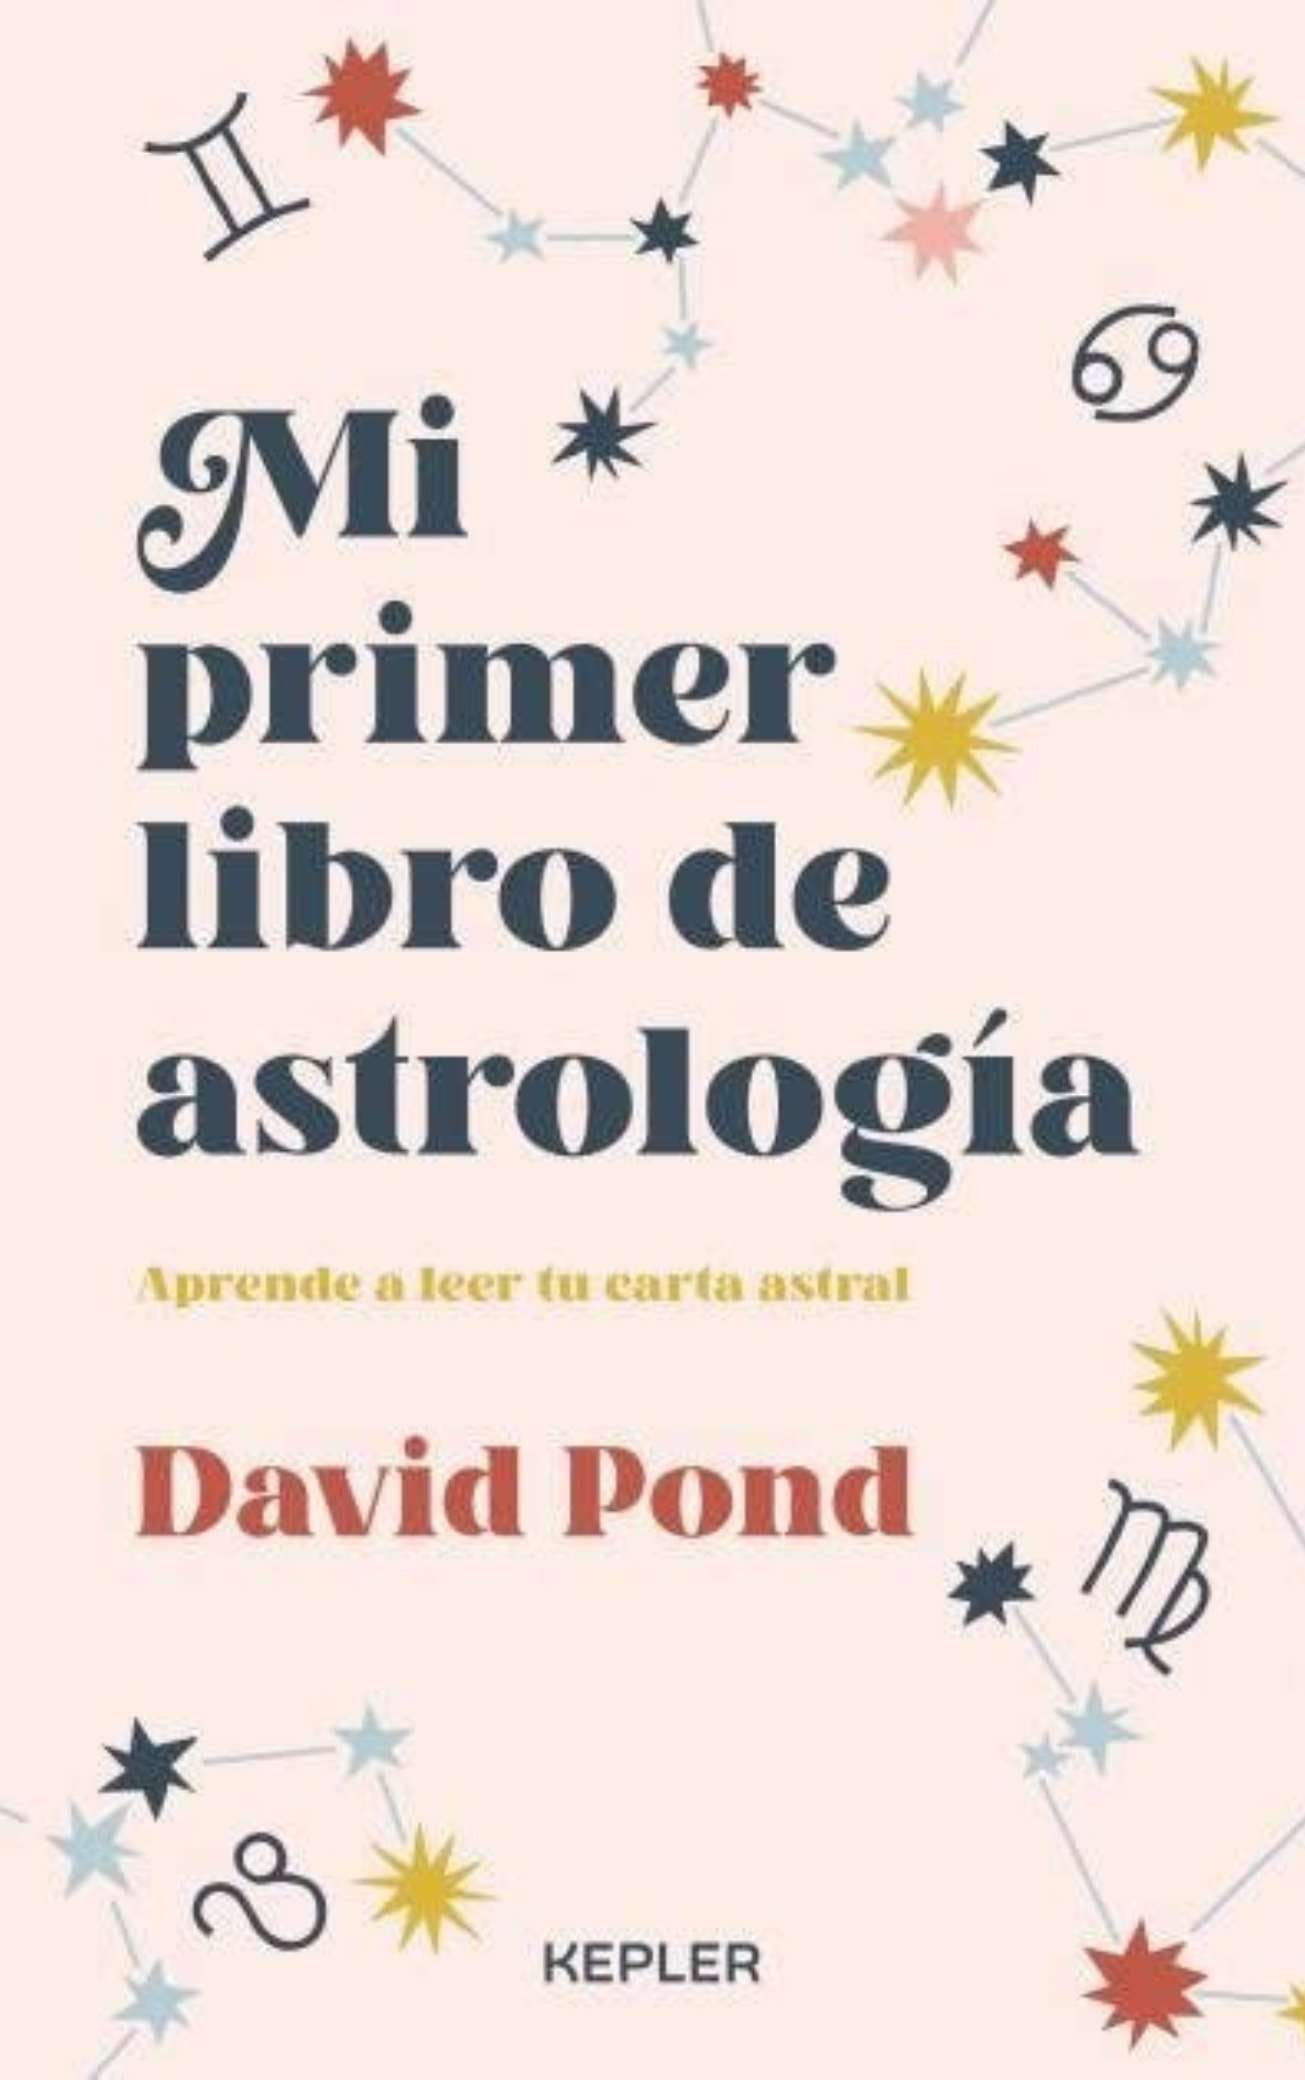 Mi primer libro de astrología - David Pond - 19WA50309_1